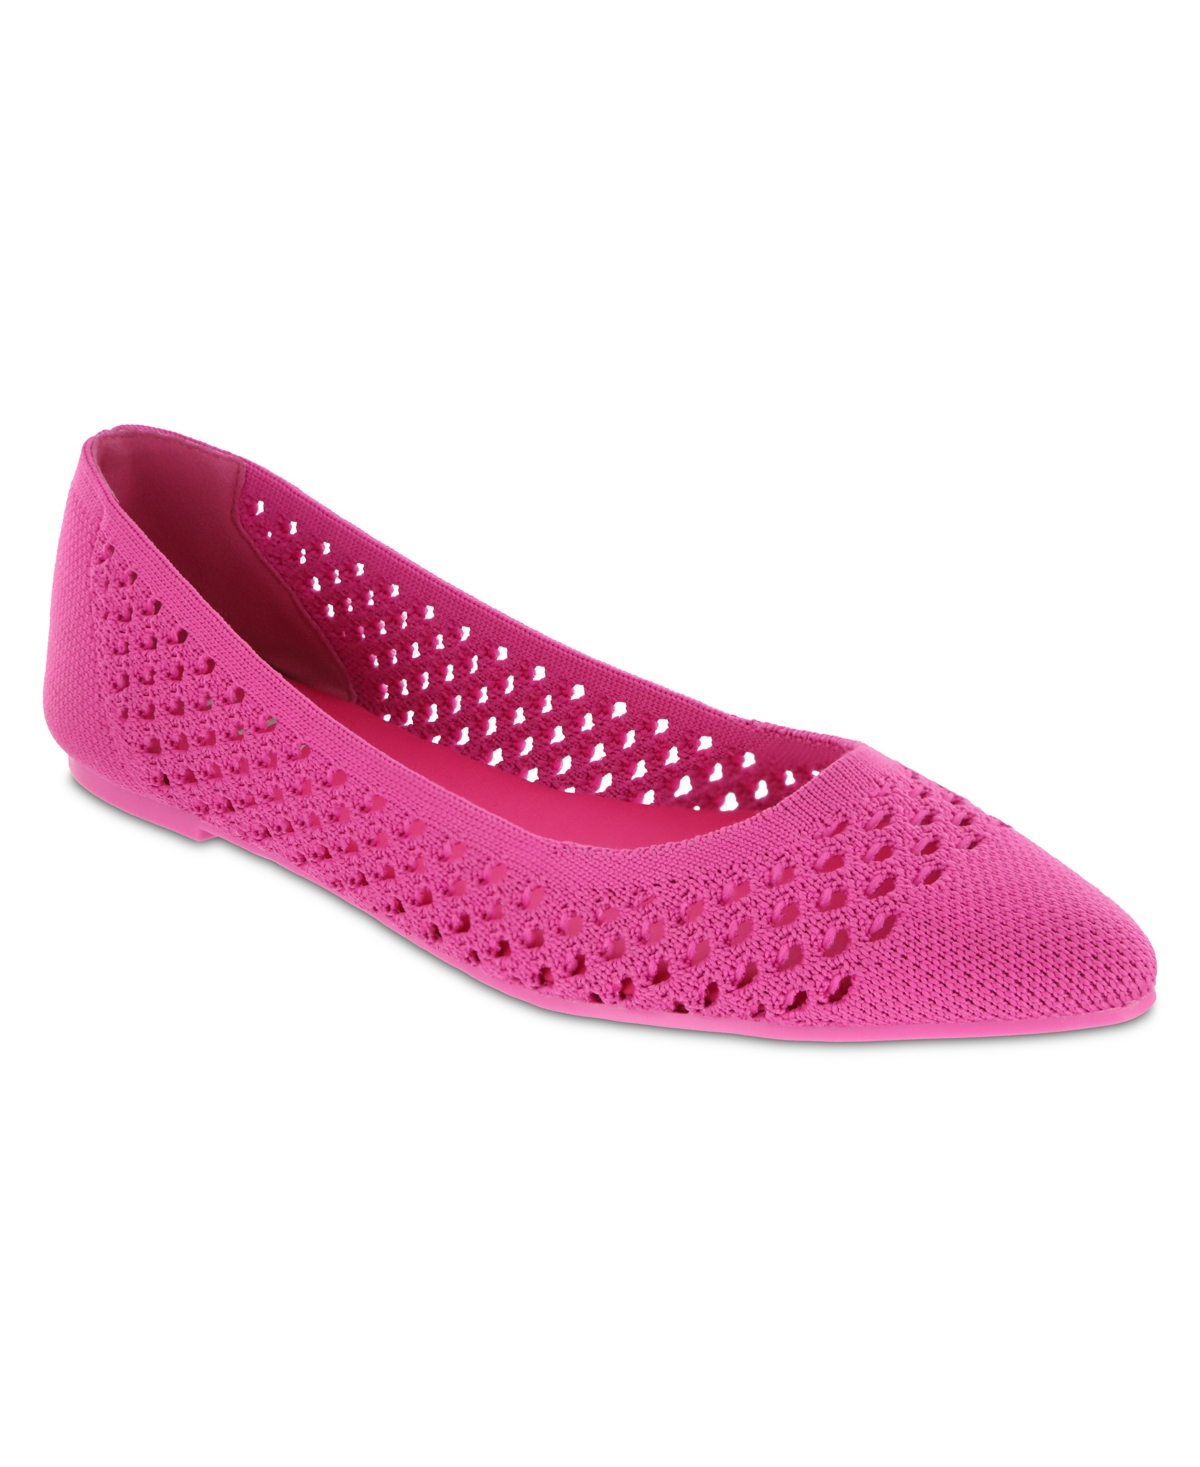 Mia Lovi Knit Pointed Toe Flat In Pink